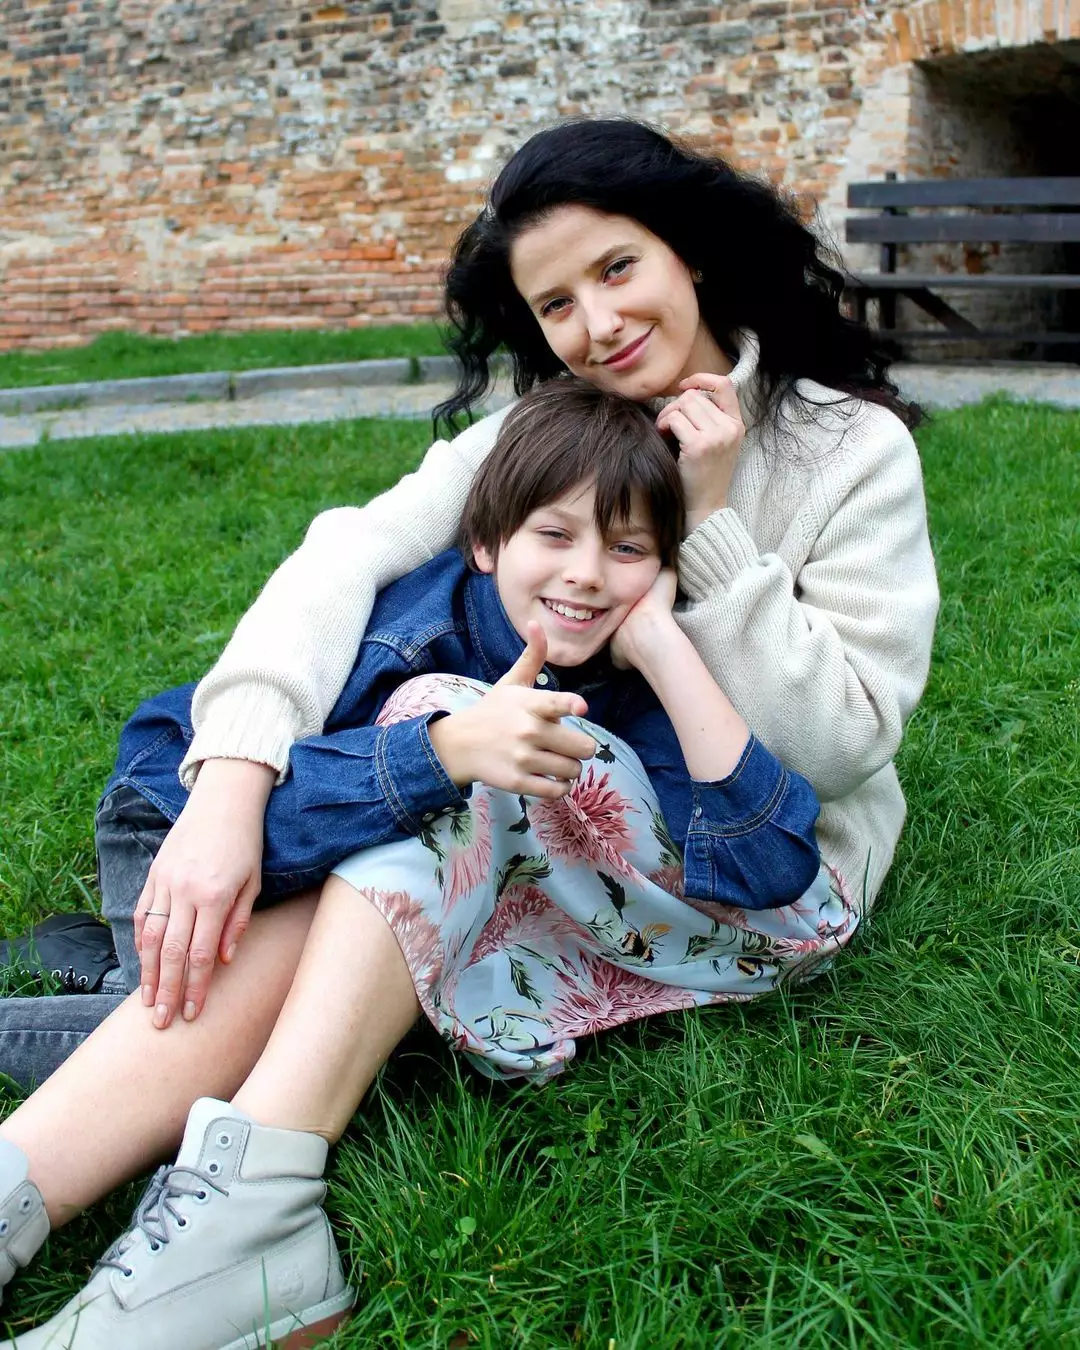 Син Сергія Притули Дмитро зі своєю мамою – Юлією